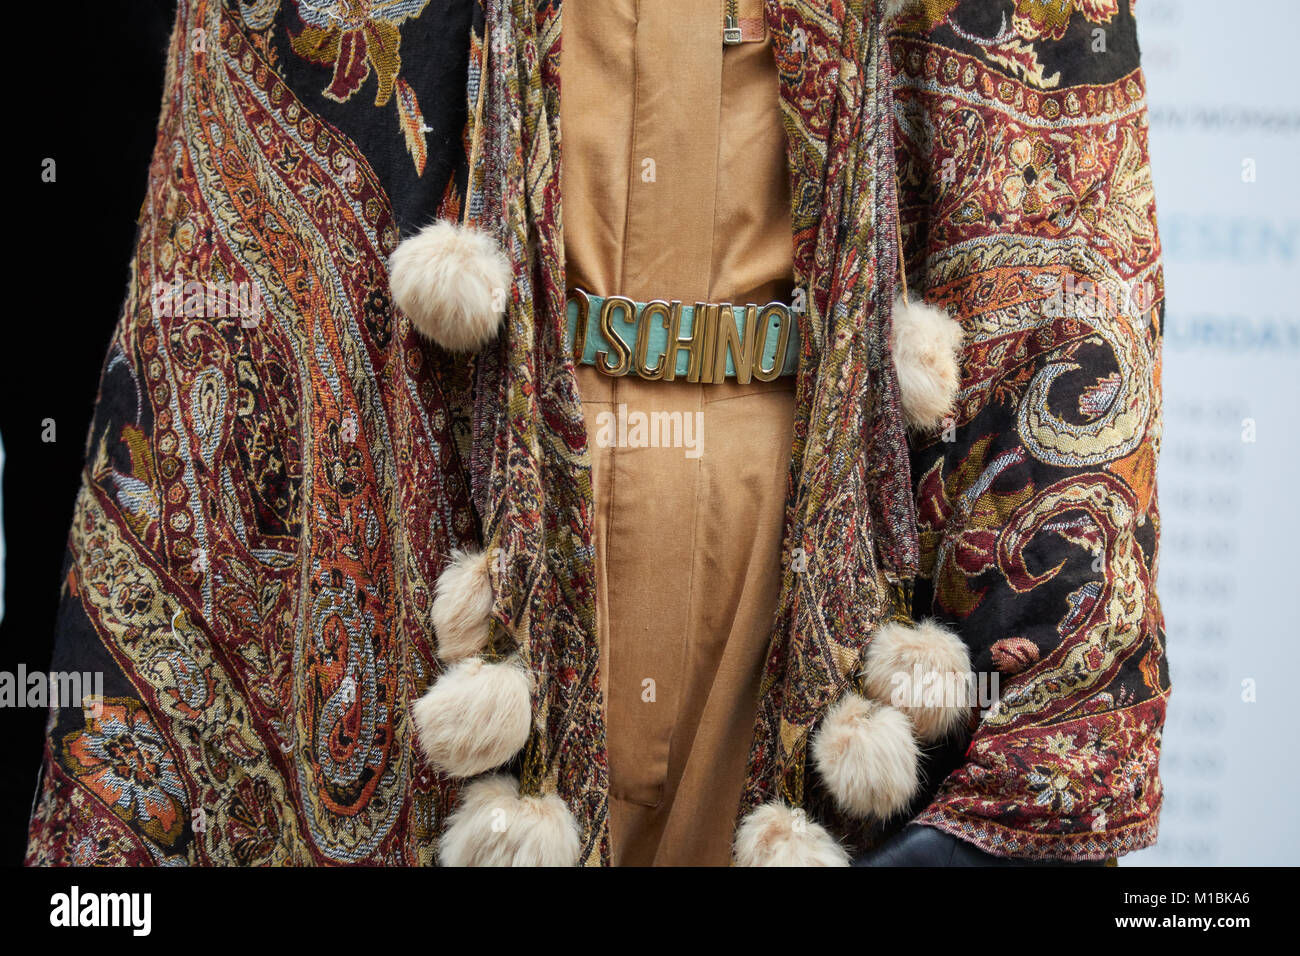 Milano - 15 gennaio: Donna con Moschino cintura marrone e design paisley sciarpa con decorazioni in pelliccia prima di rappresentare la sfilata di moda, la Settimana della Moda Milanese str Foto Stock